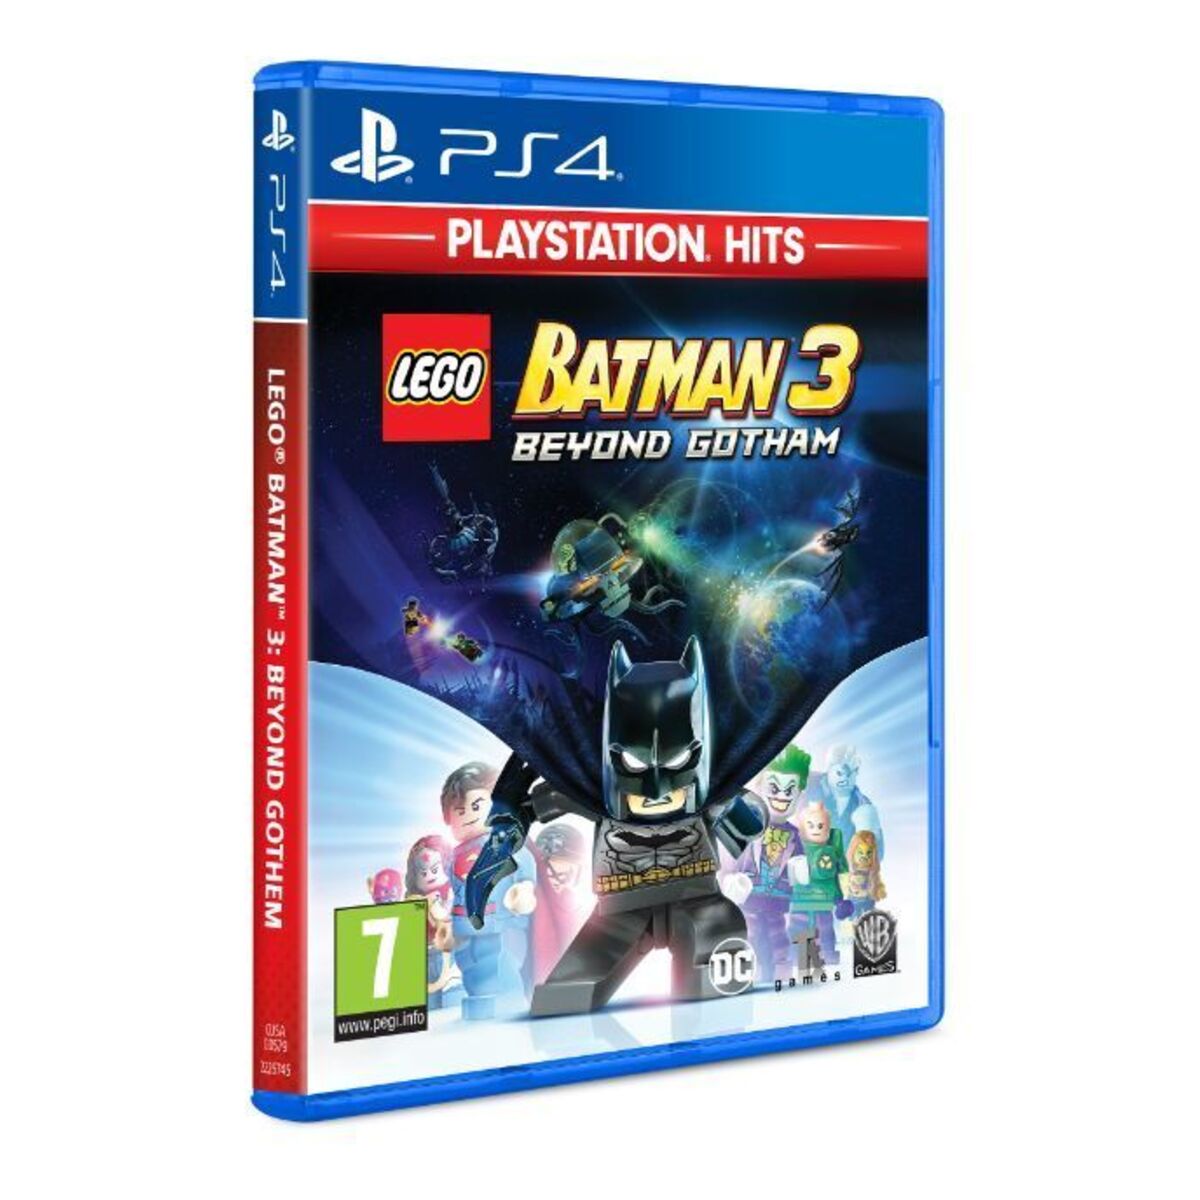 Buy LEGO Batman 3 Beyond Gotham (PlayStation Hits) - PlayStation 4